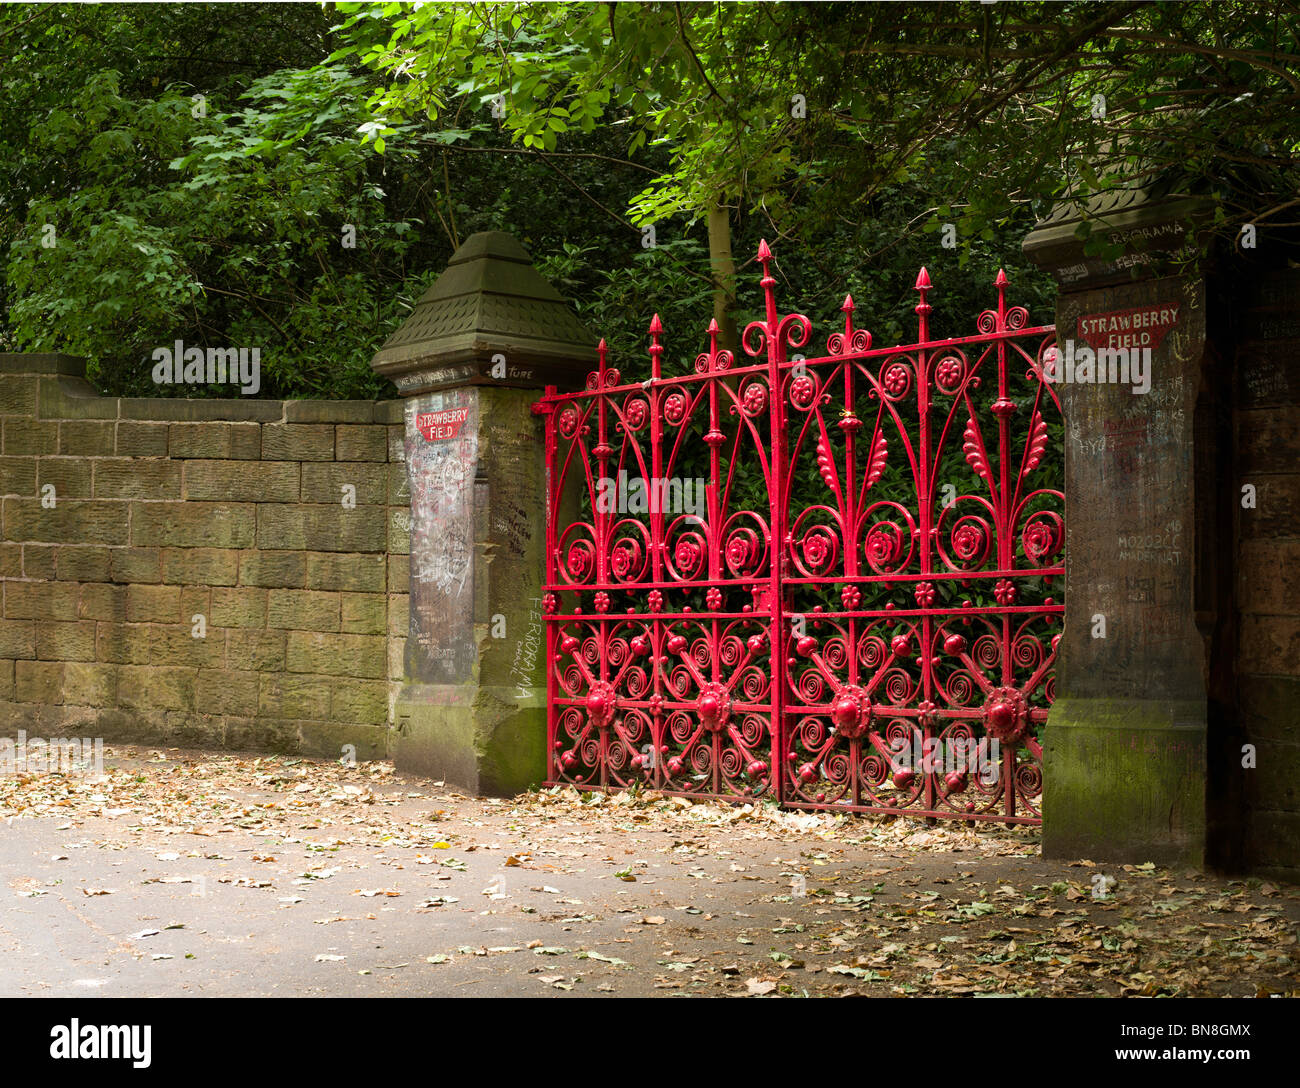 Puertas de Strawberry Fields, Liverpool, estas son las originales puertas que ahora han sido derribados y sustituidos por réplicas. Foto de stock